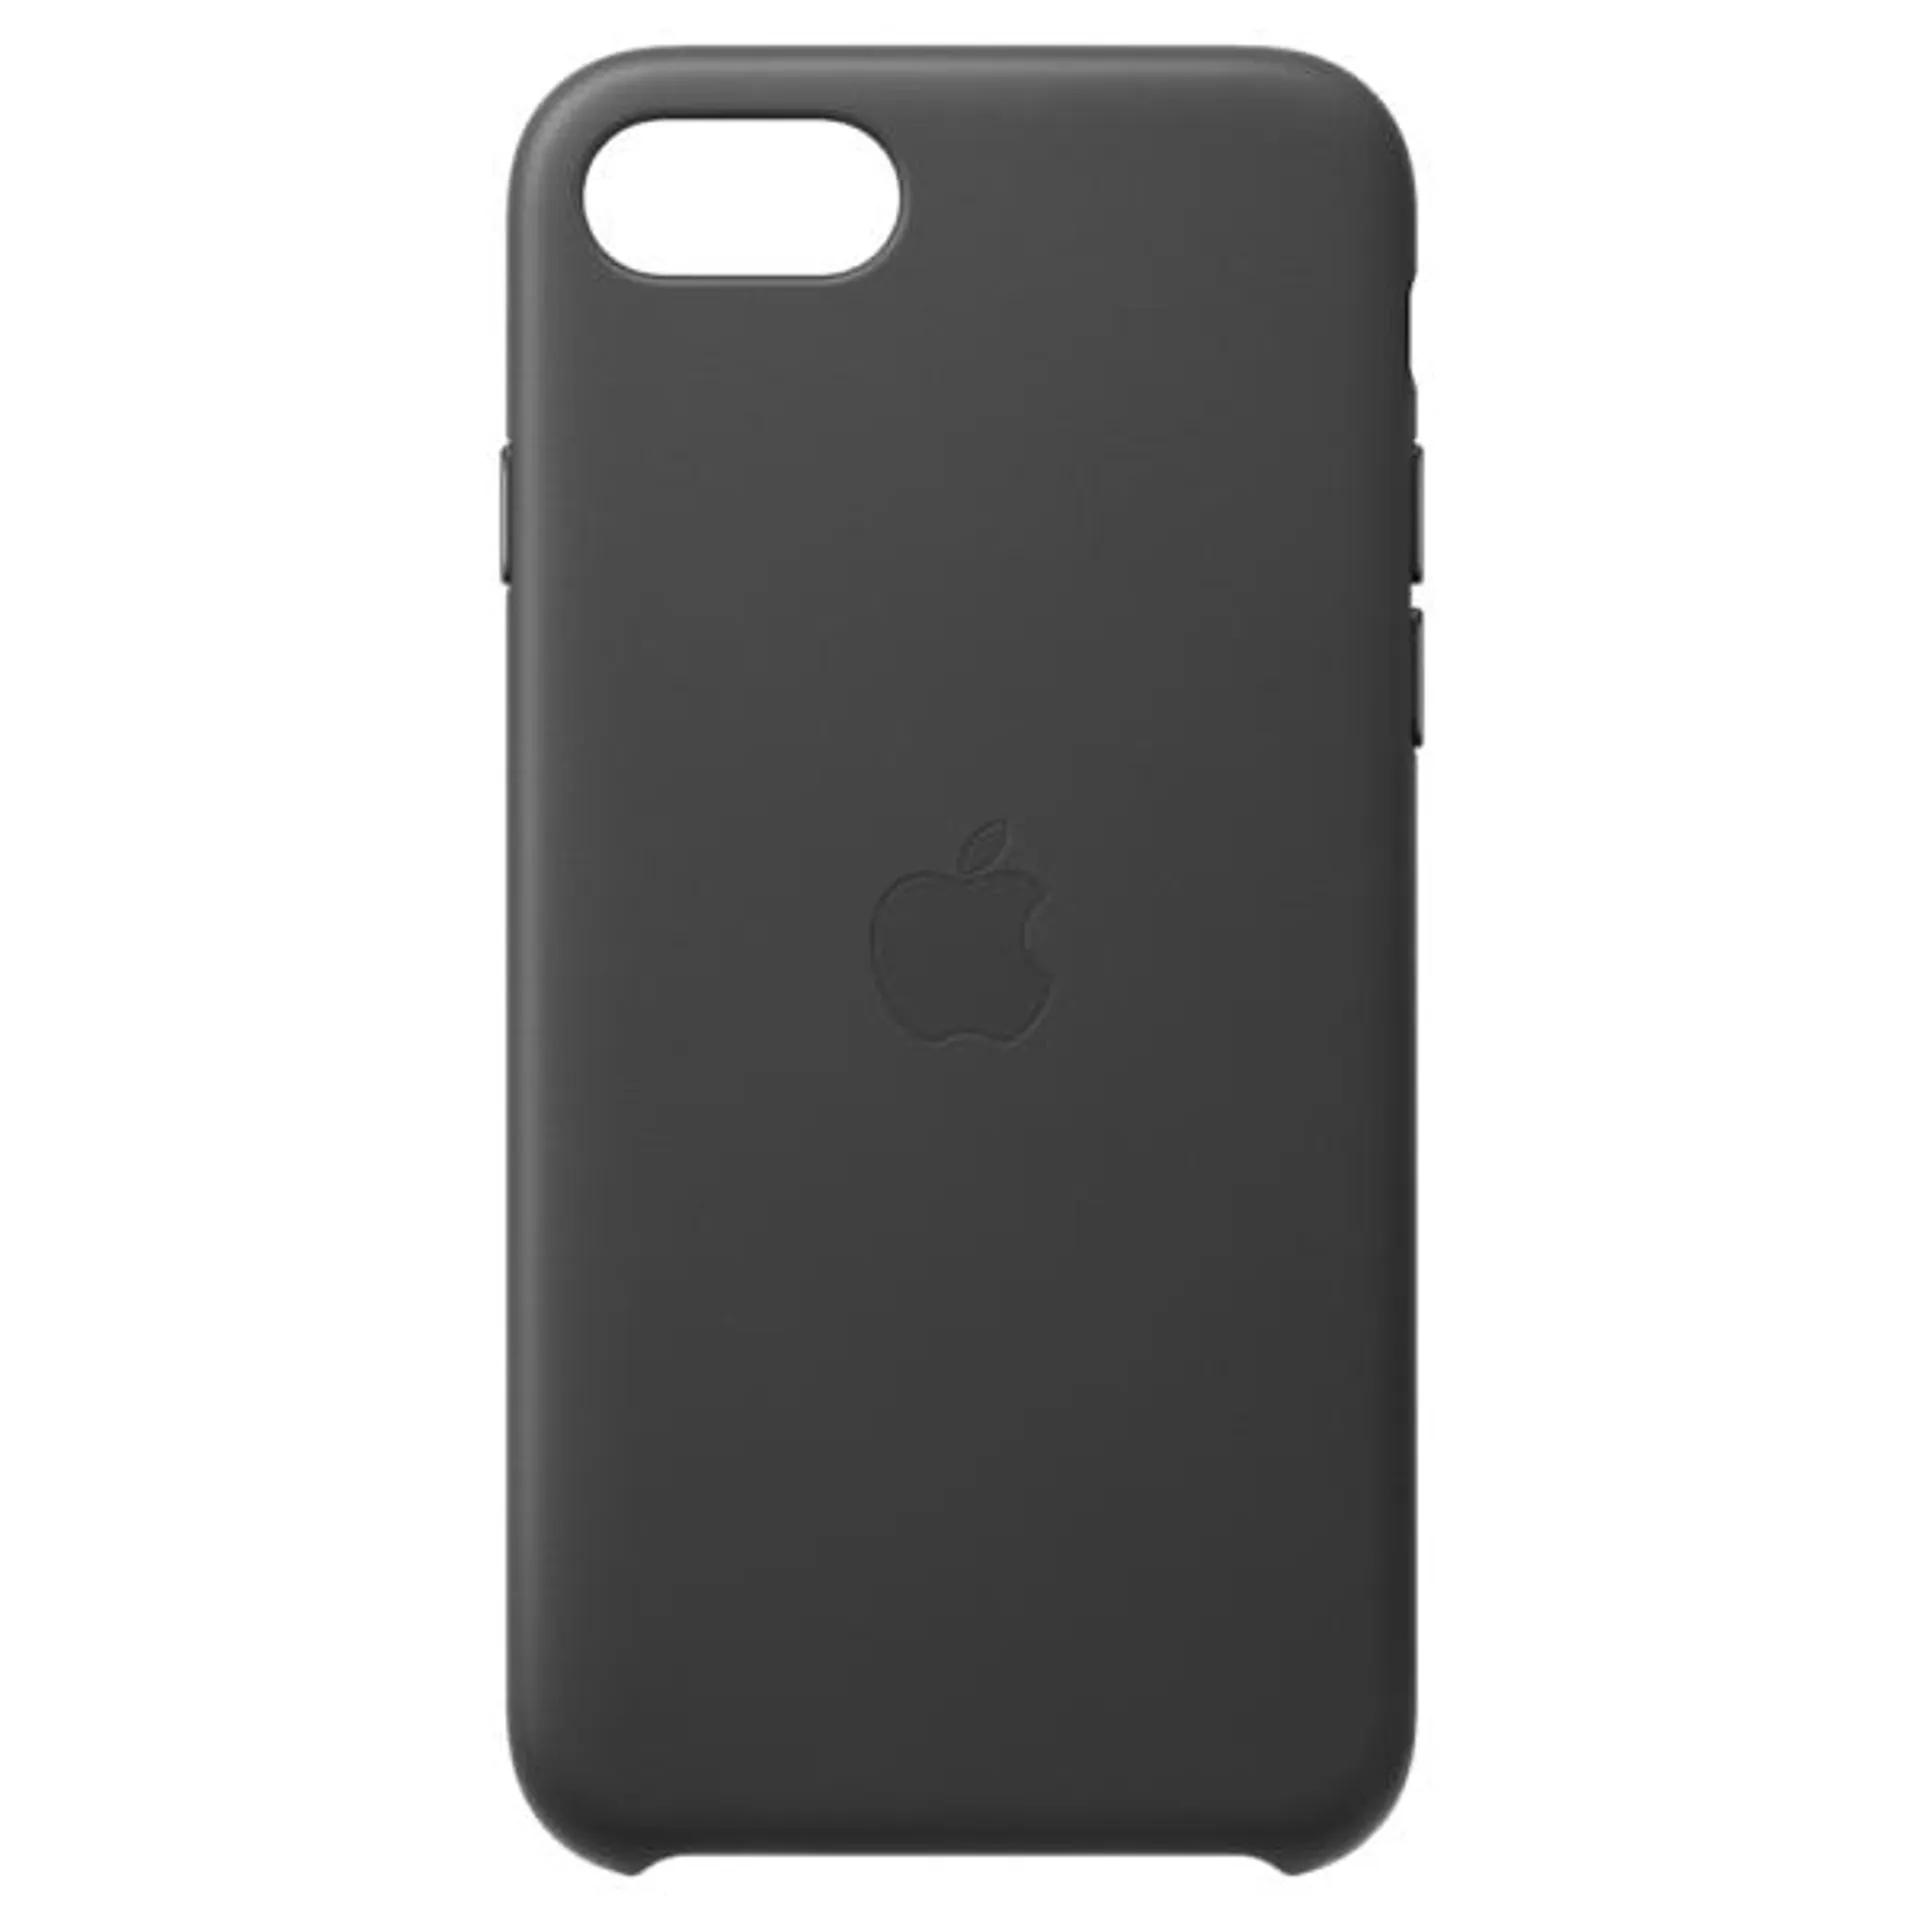 Apple iPhone SE Leder Case – Hülle – schwarz